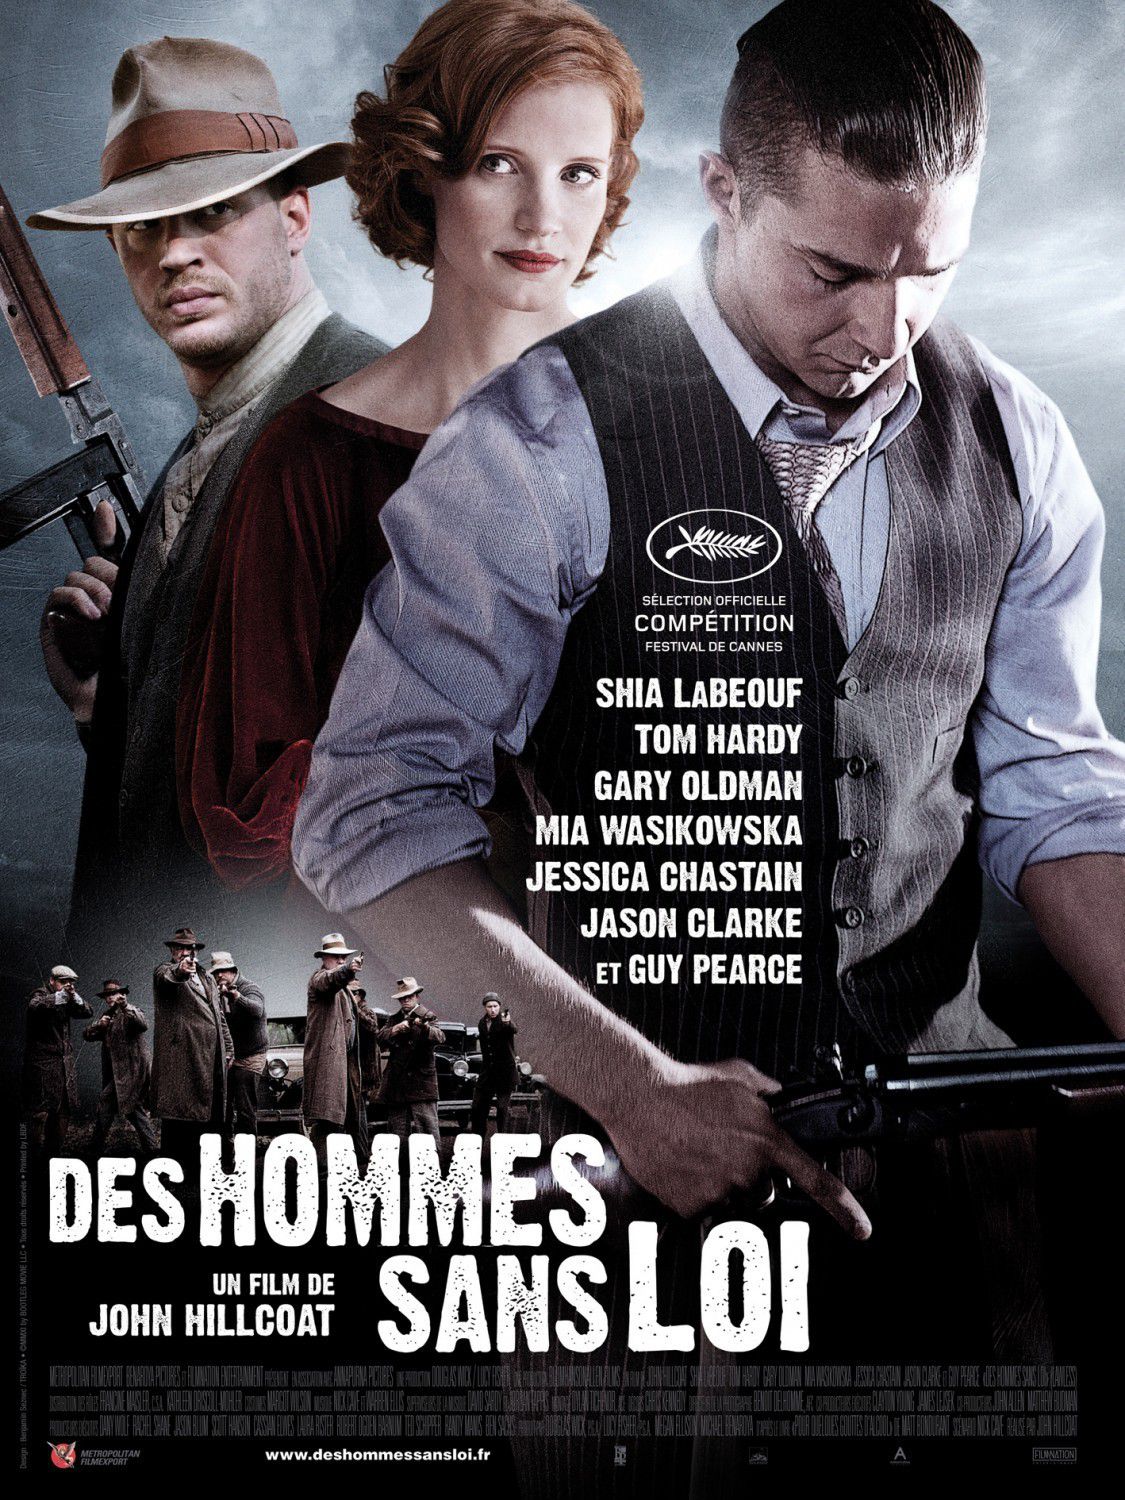 Des hommes sans loi - Film (2012) streaming VF gratuit complet